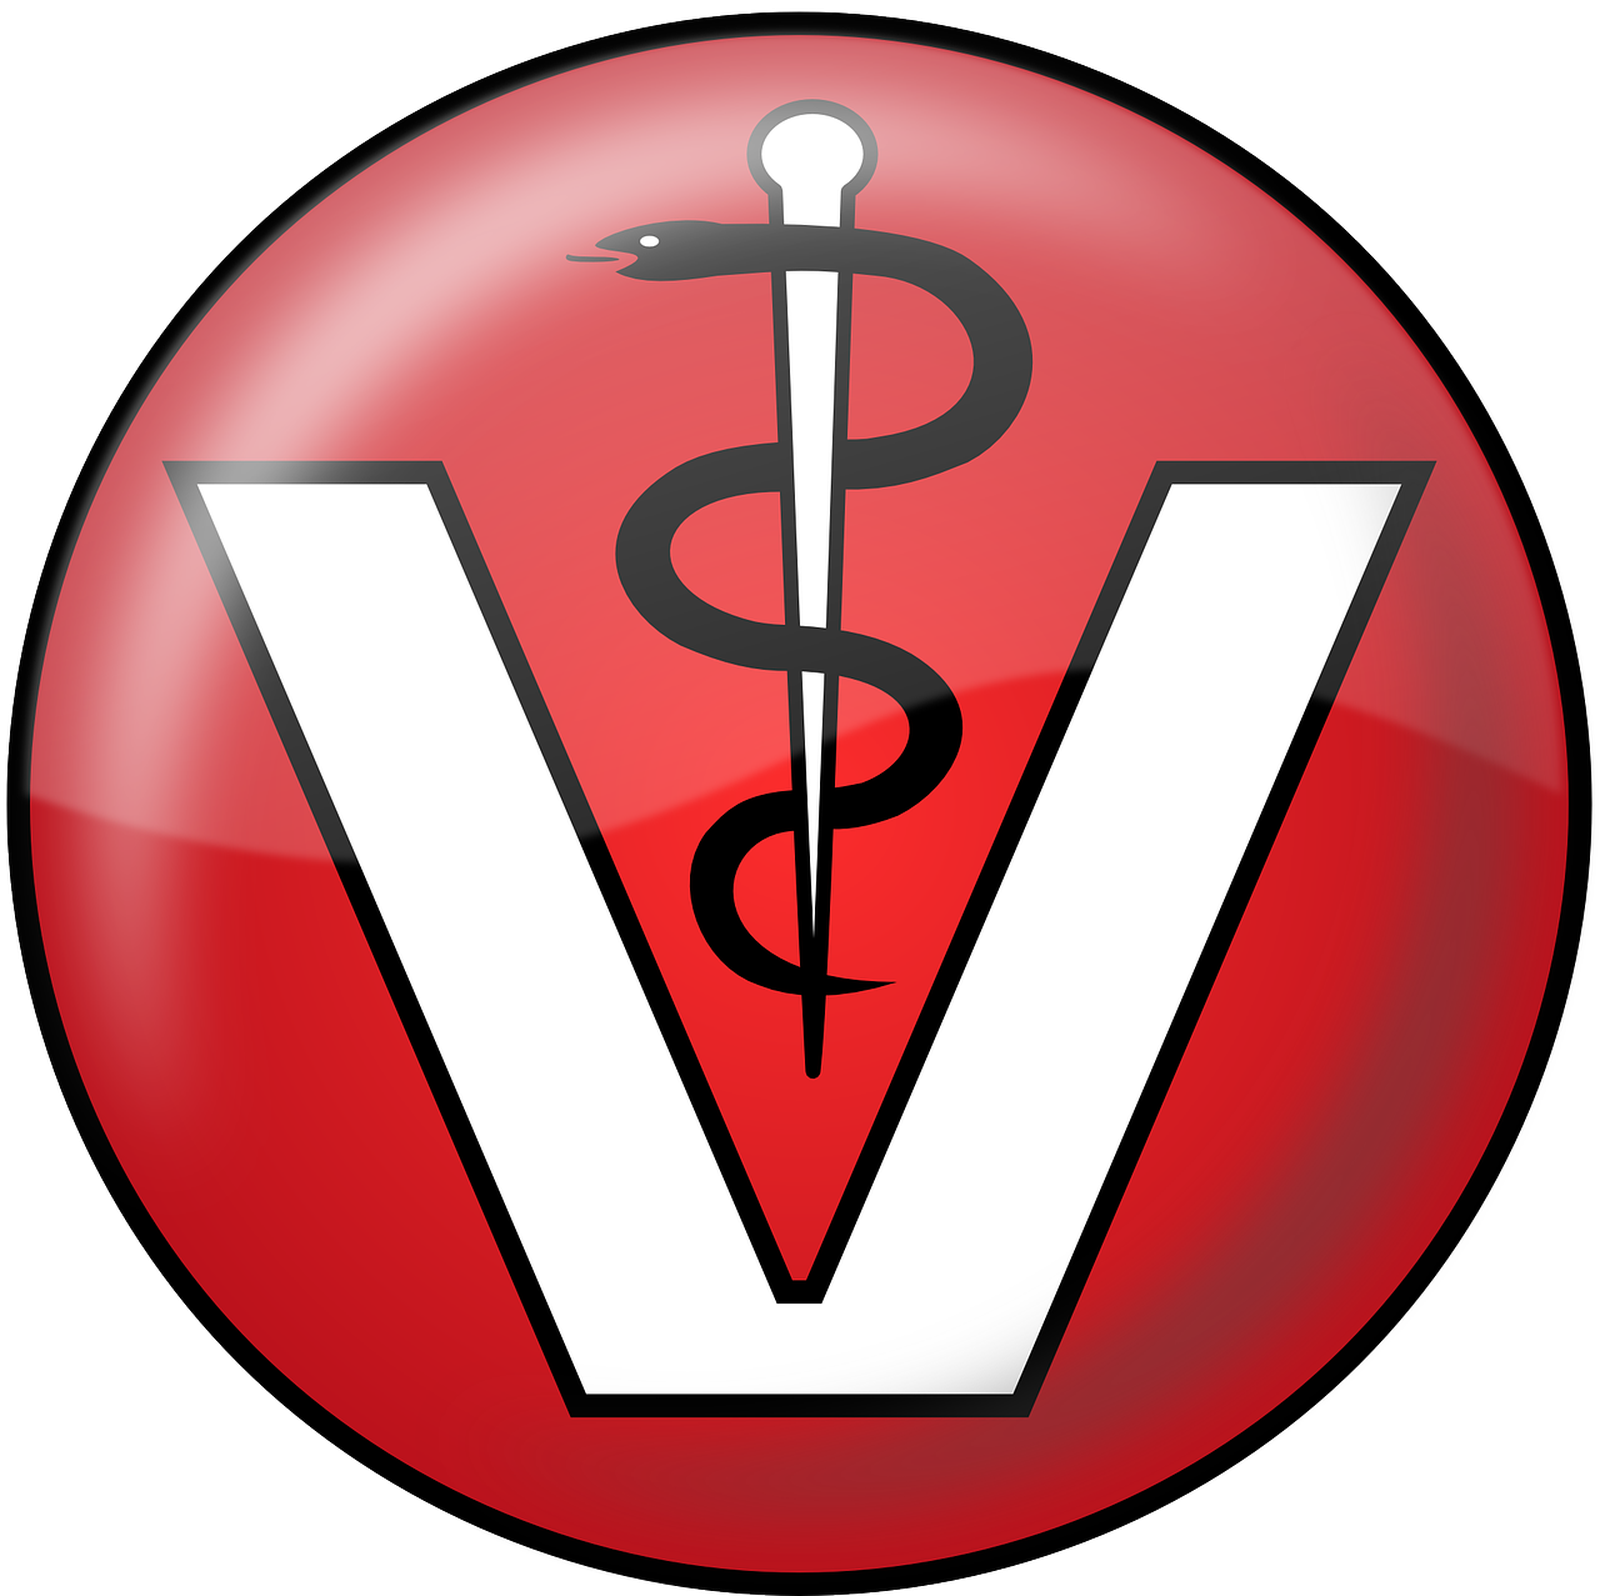 Tierarztlogo in rot-weiß mit Schlange als Vectorgrafik